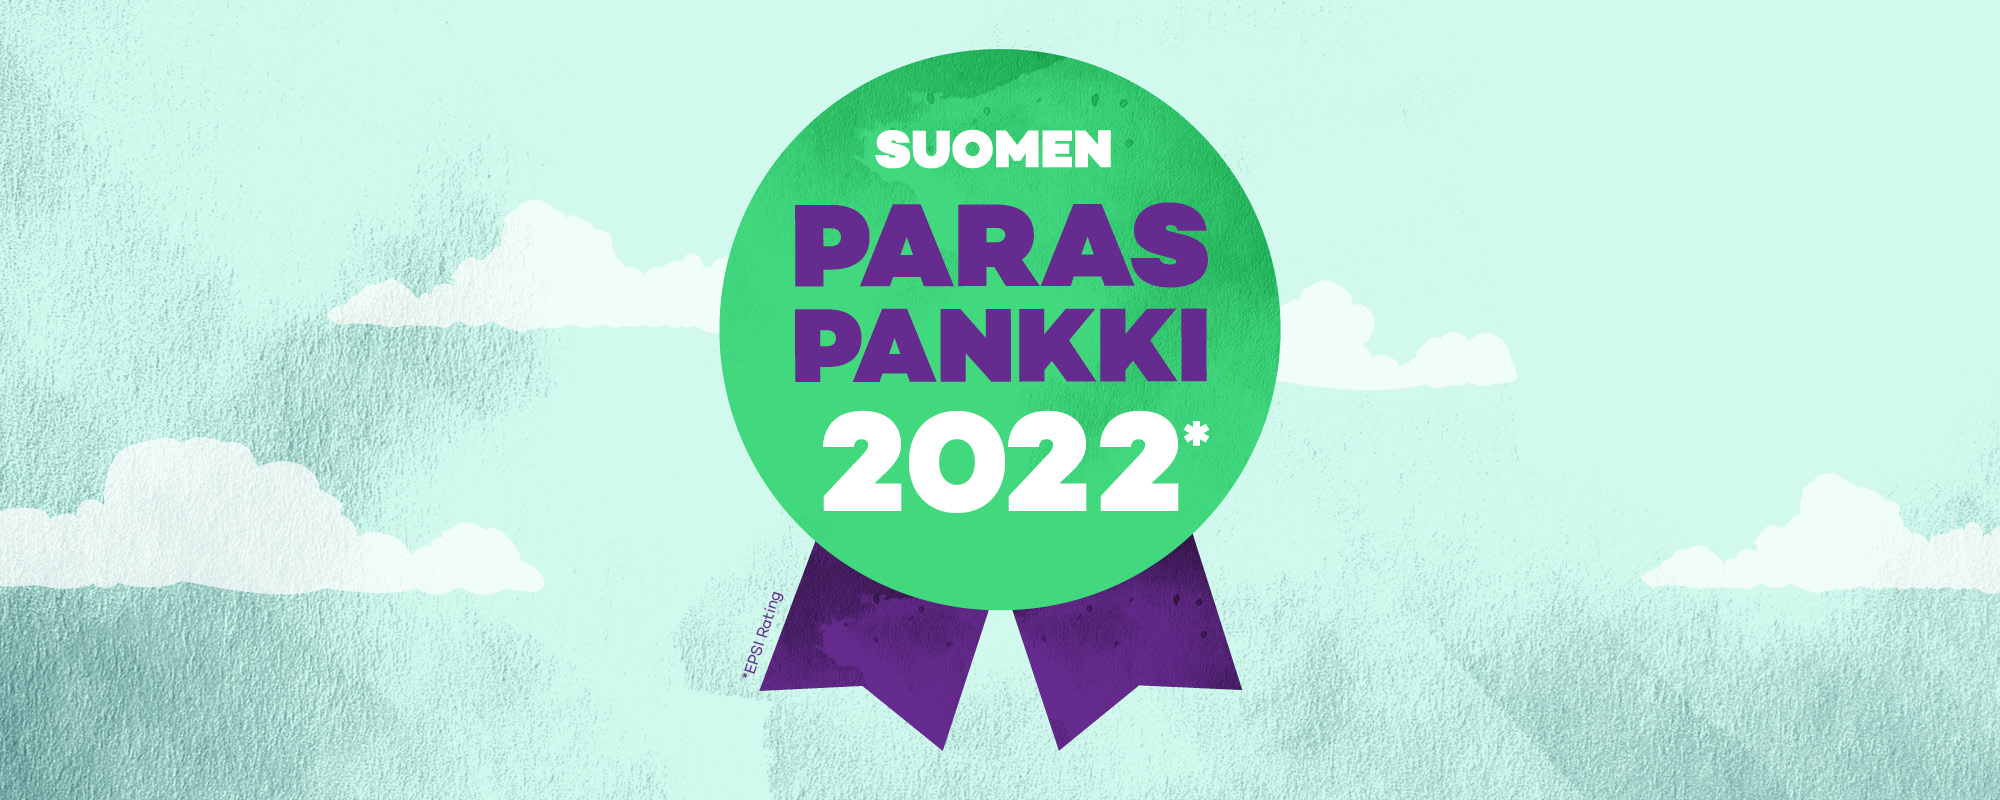 Suomen paras pankki 2022.